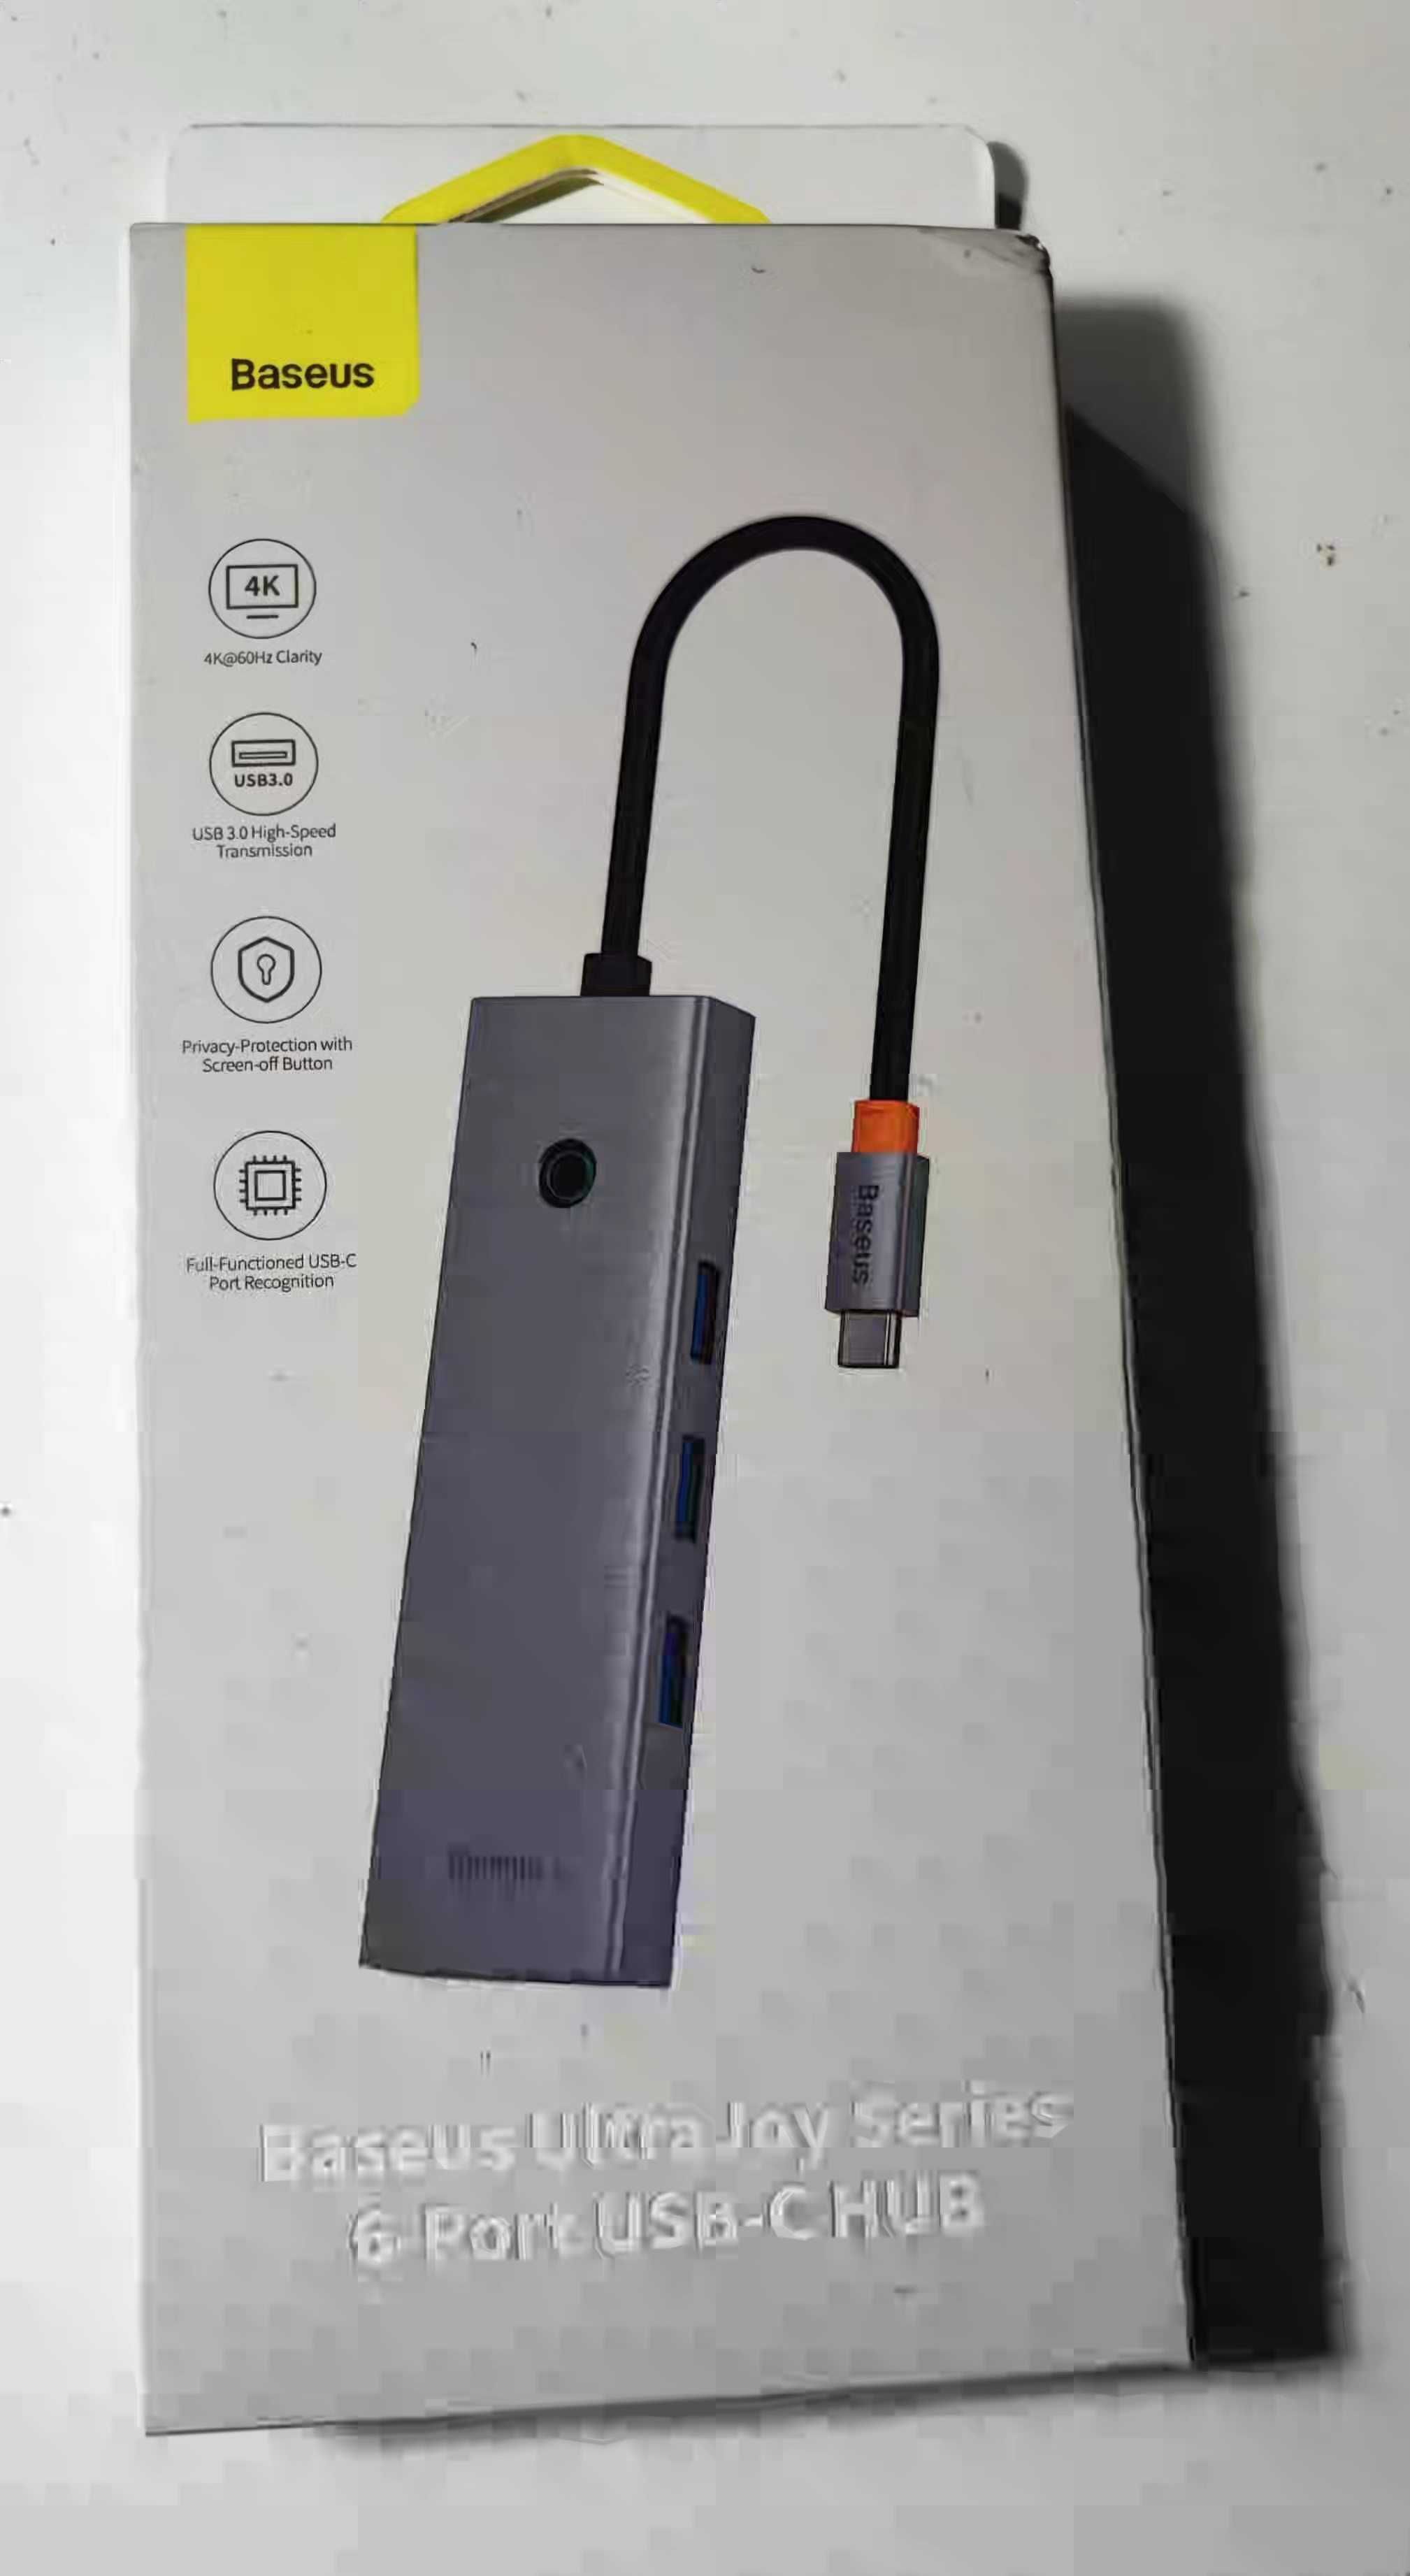 Stacja dokująca BASEUS UltraJoy Series 6-Port USB-C HUB